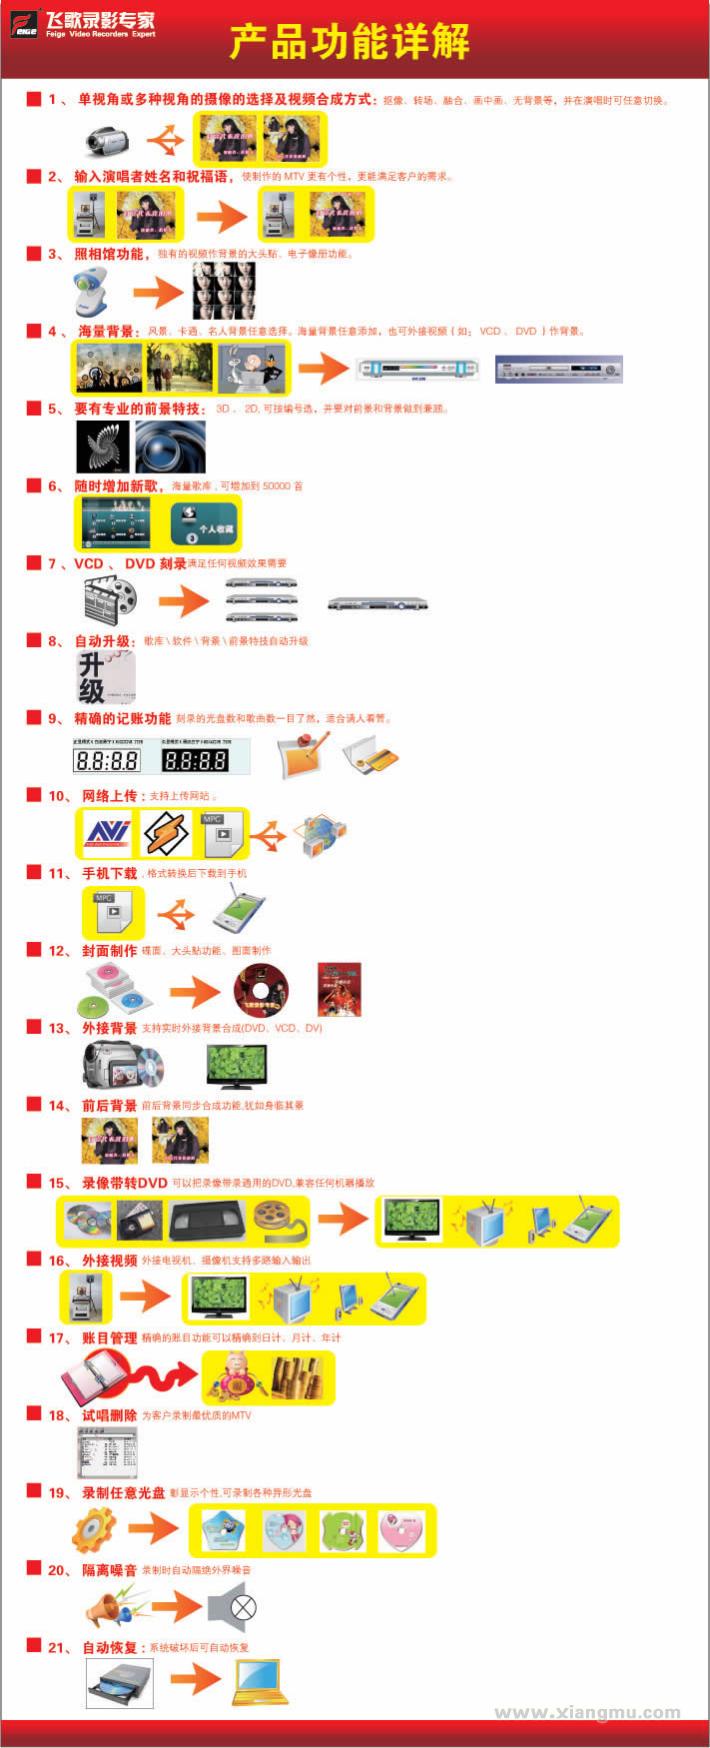 飞歌傻瓜电影录制机：中国大陆地区唯一可与进口品牌相媲美的国产品牌_8